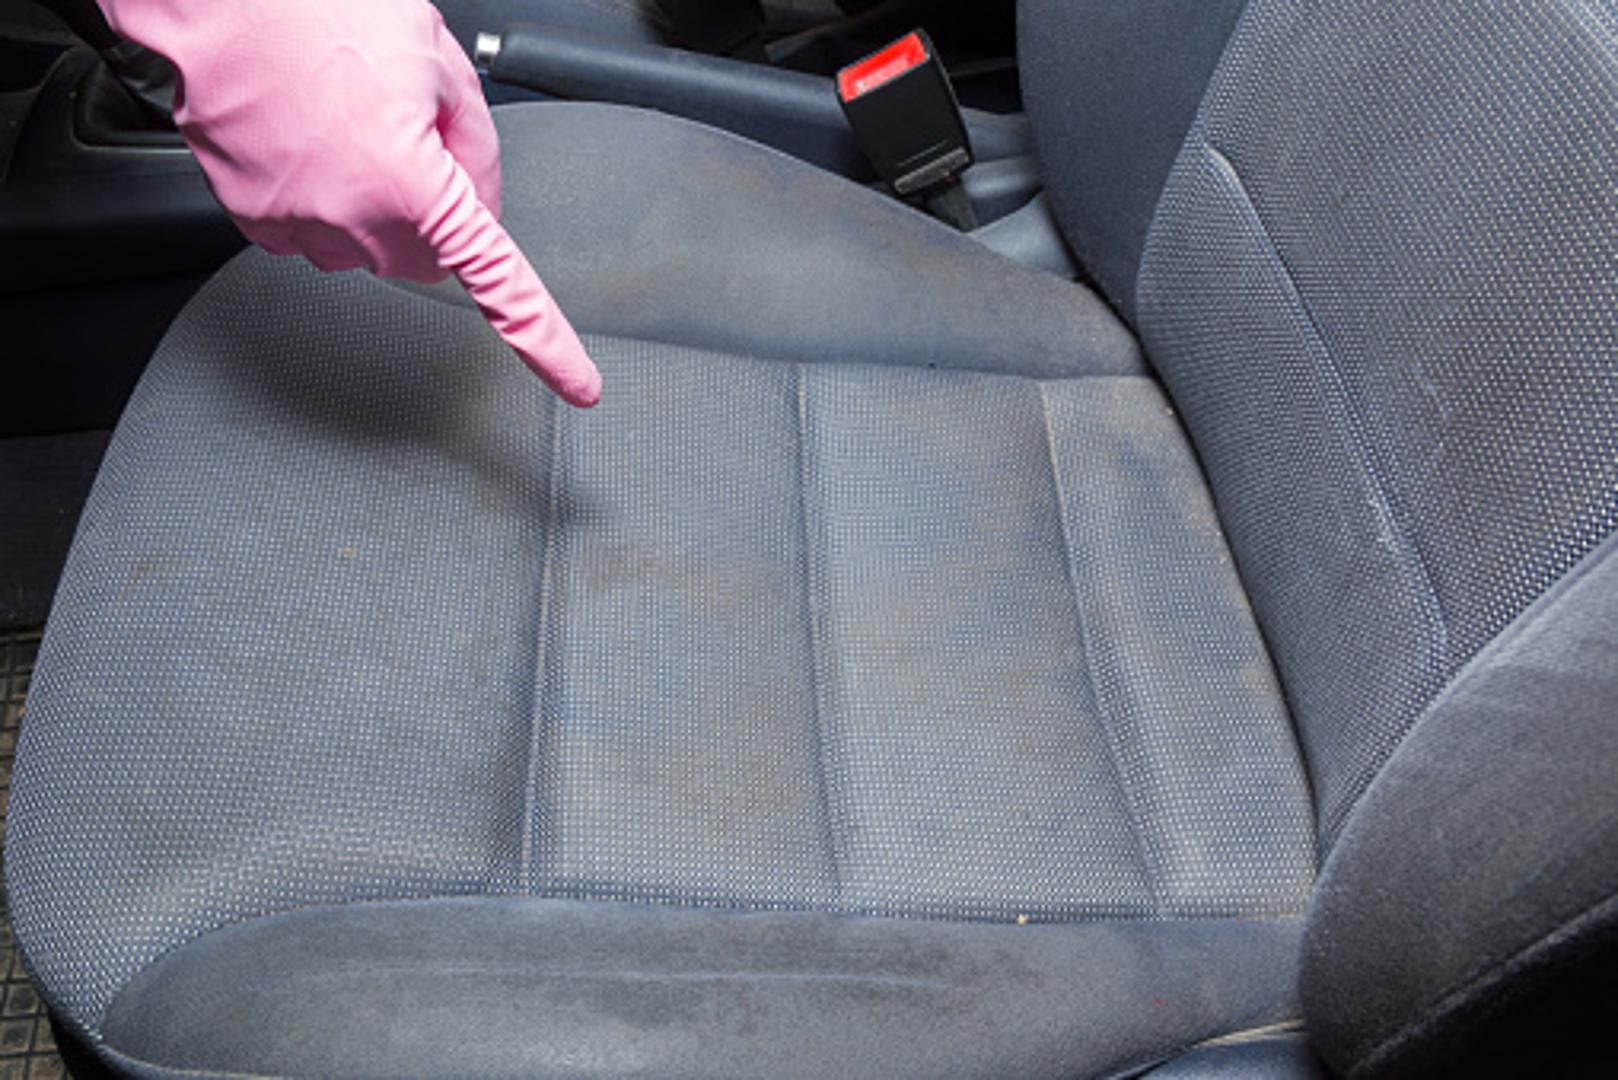 Nešto vam se slučajno prolilo na sjedalo u automobilu? Ili imate mrlju od voćnog soka ili kašice na autosjedalici? Bilo kako bilo, ako vas muči prljavo sjedalo, postoji jednostavan način kako ga možete sami očistiti. 